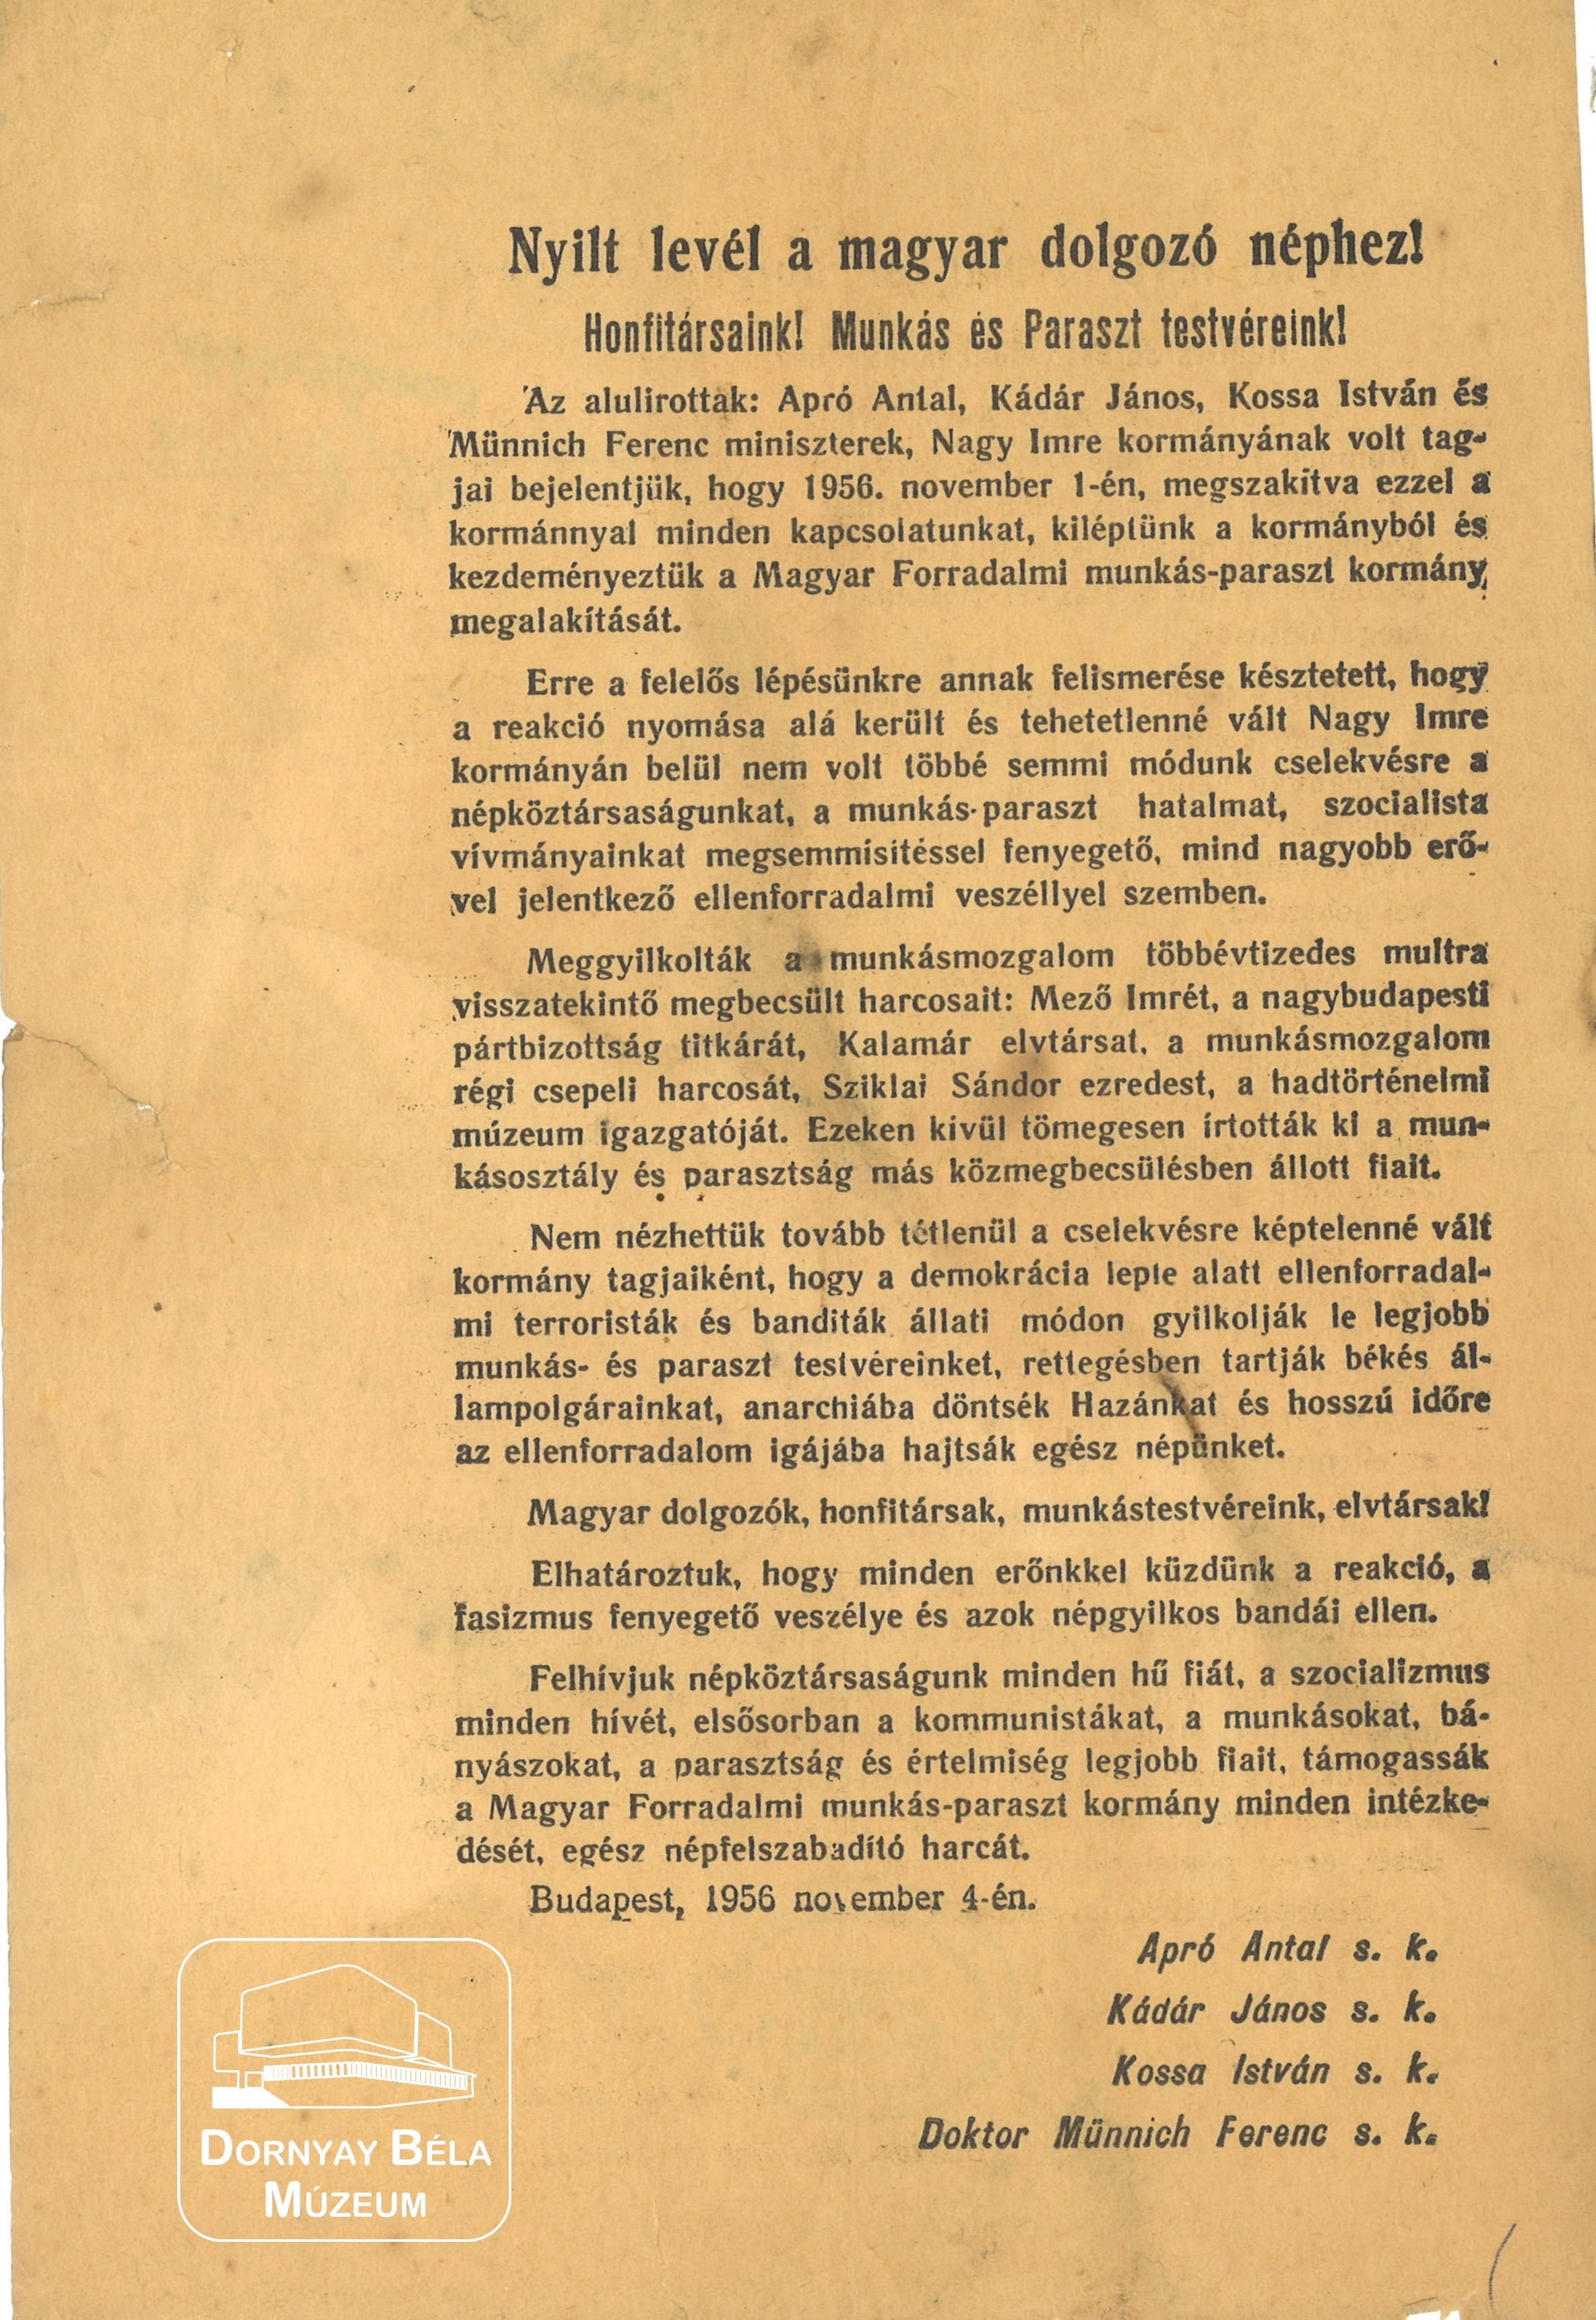 Apró, Kádár, Kossa, Münnich nyílt levele a magyar dolgozó néphez. (Dornyay Béla Múzeum, Salgótarján CC BY-NC-SA)